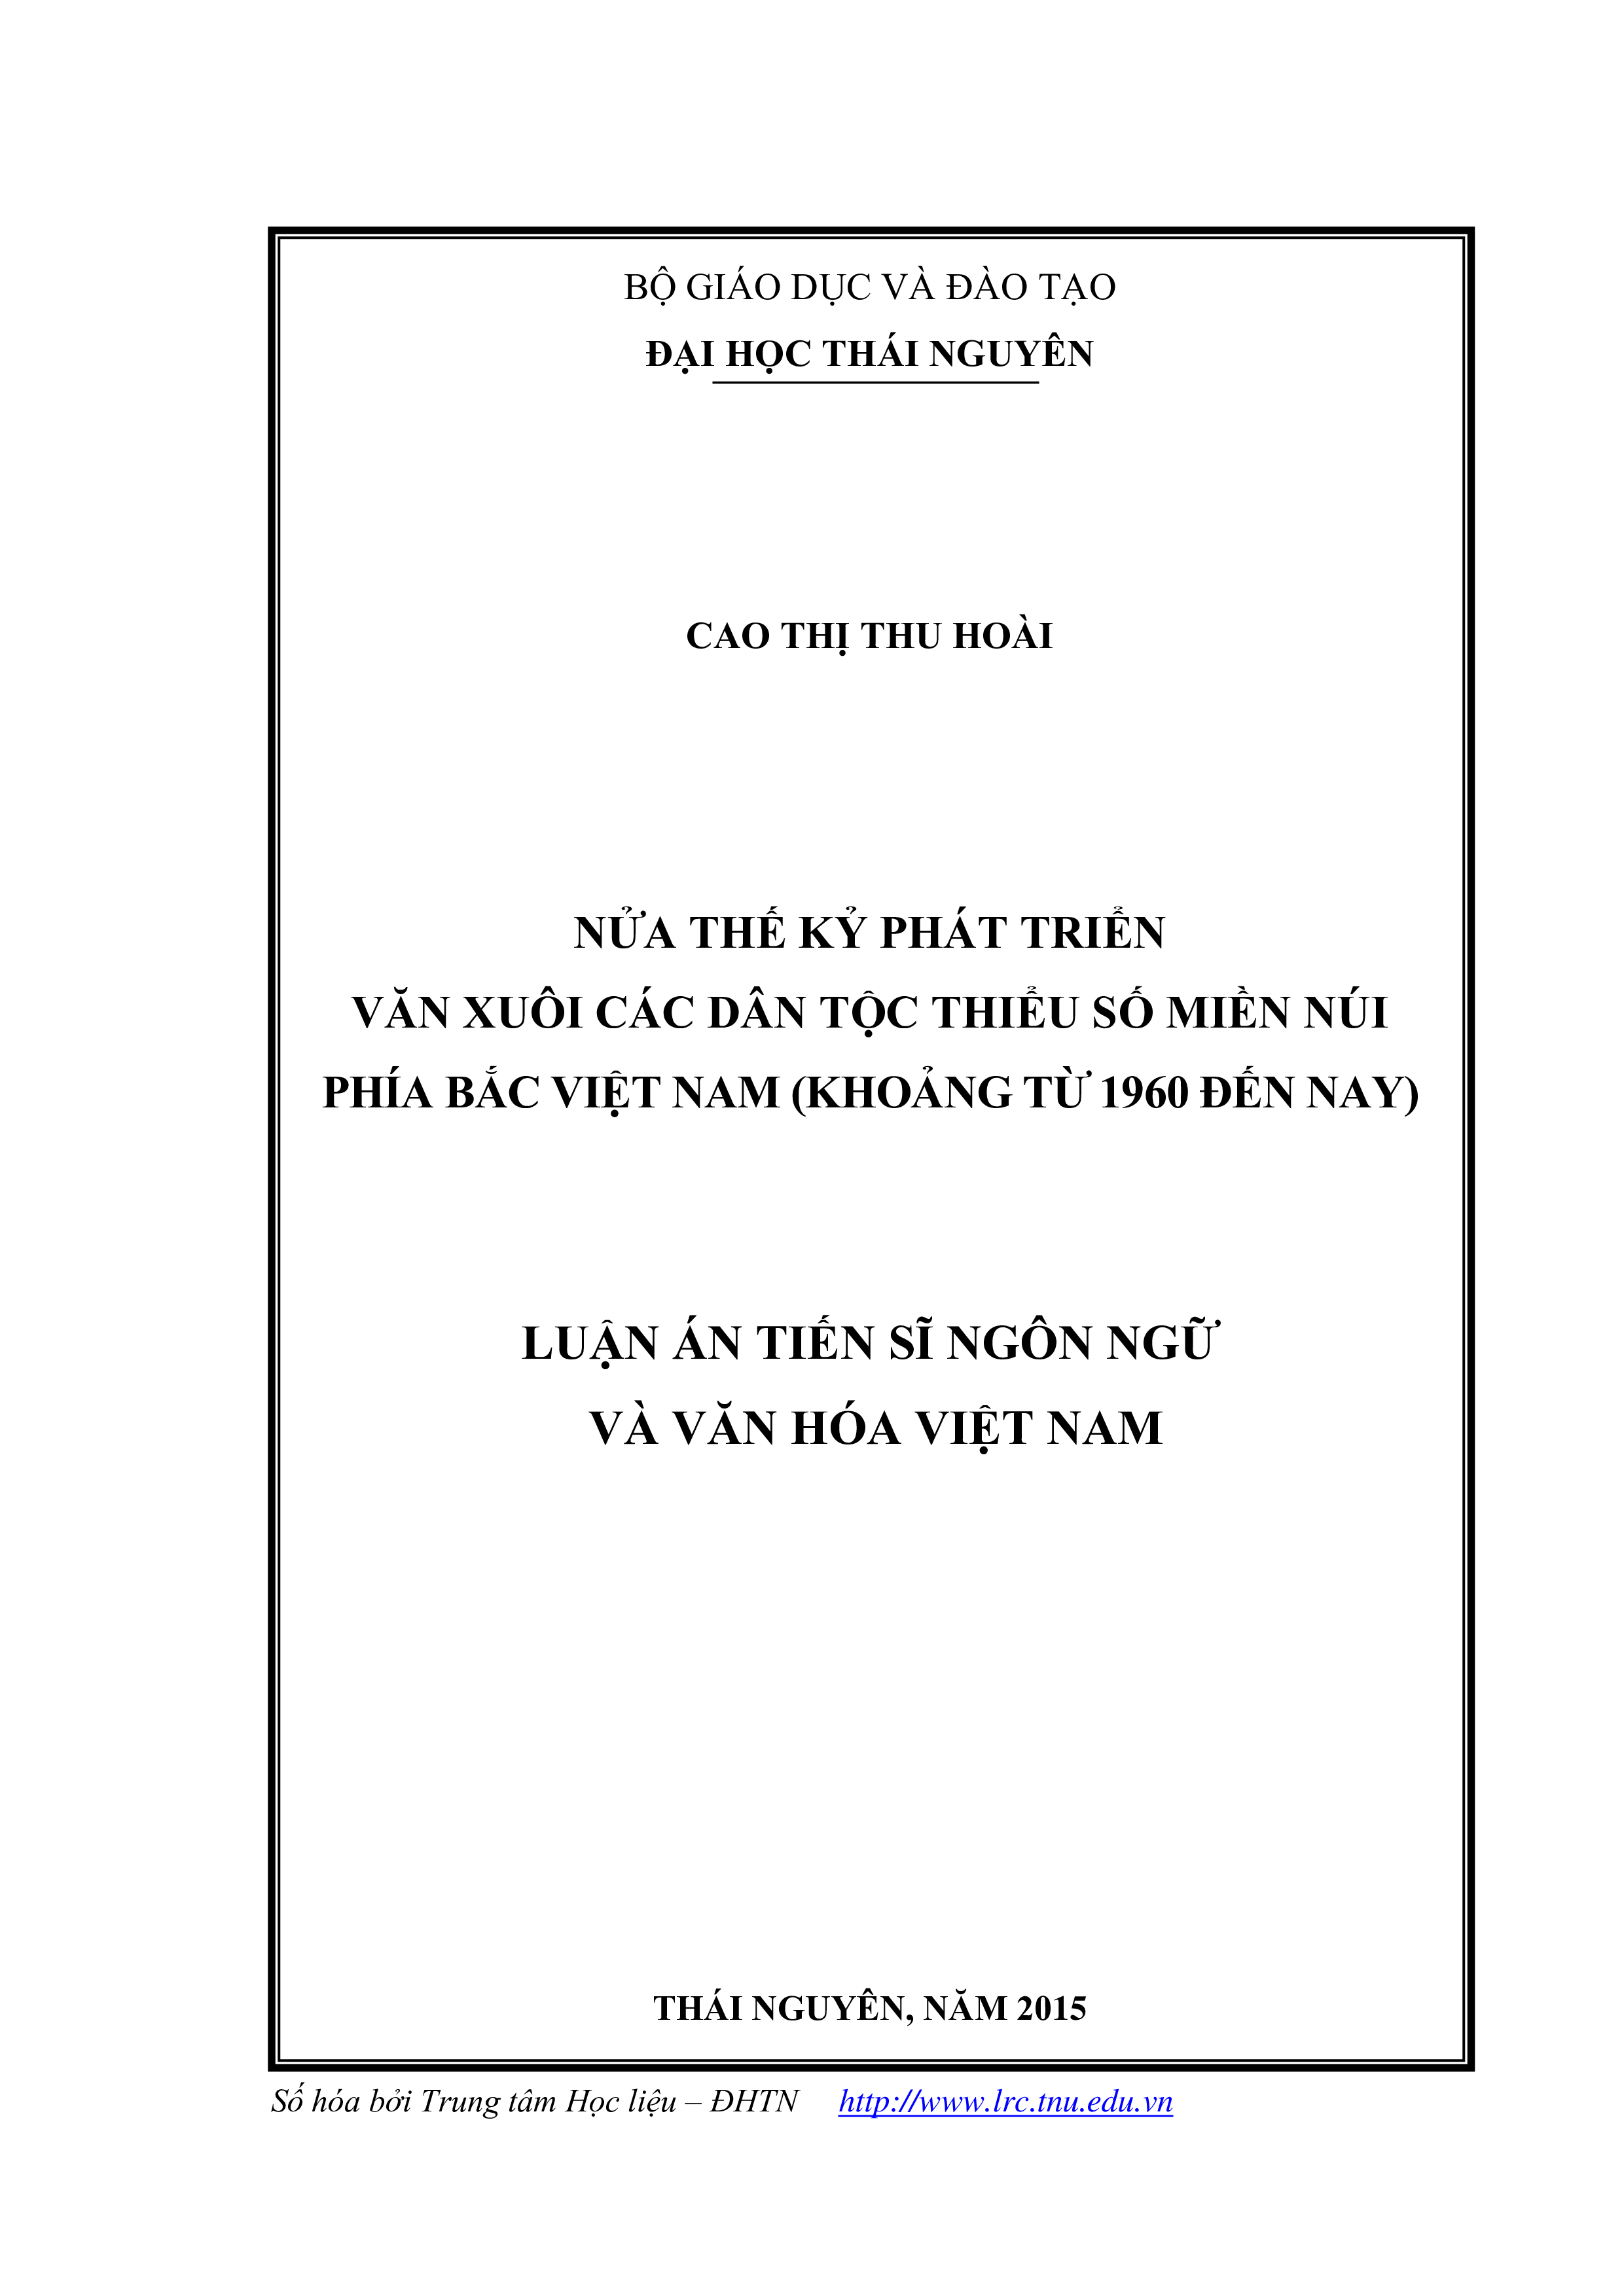 Nửa thế kỷ phát triển văn xuôi các dân tộc thiểu số miền núi phía bắc Việt Nam (khoảng từ 1960 đến nay)